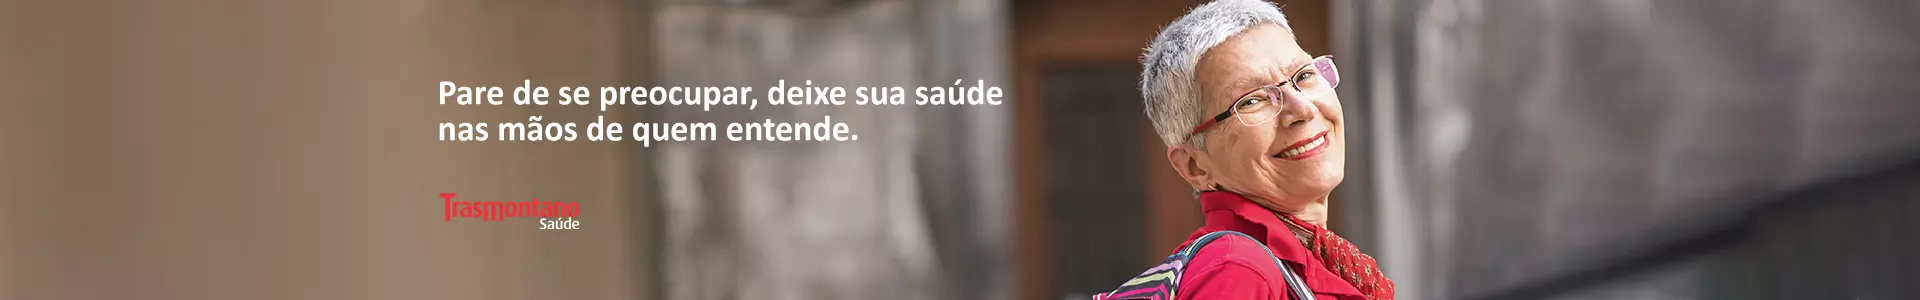 Trasmontano Saúde São Caetano do Sul